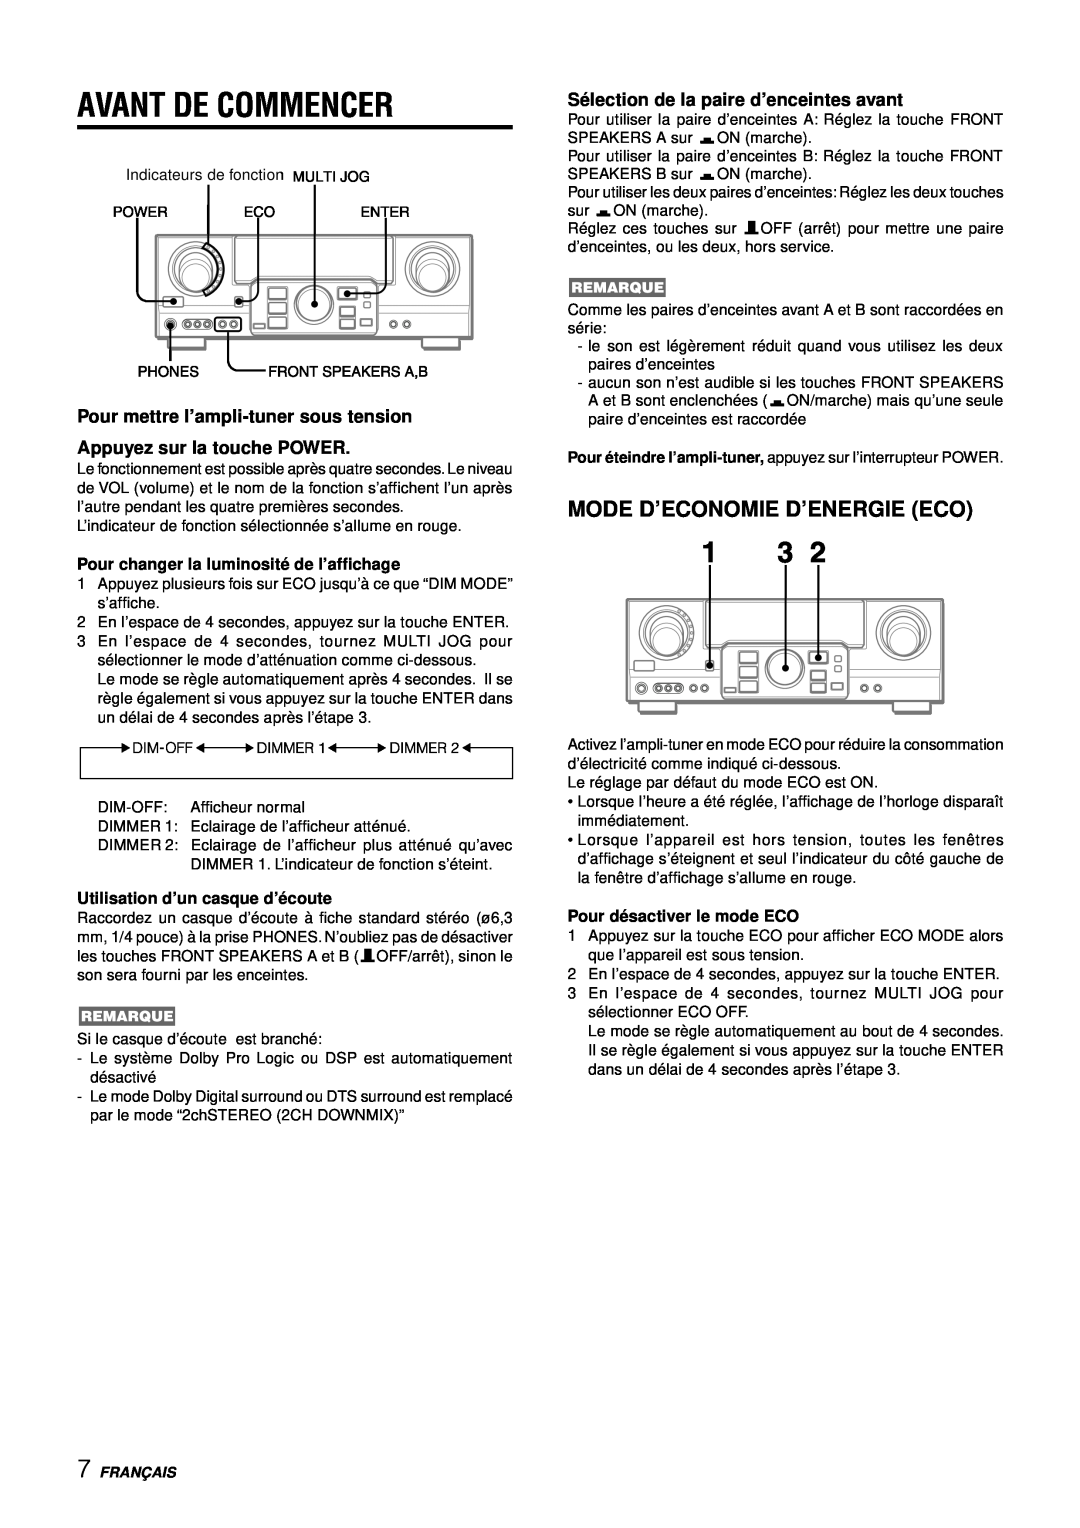 Aiwa AV-D77 manual Avant De Commencer, Mode D’Economie D’Energie Eco, Pour mettre l’ampli-tunersous tension, Franç Ais 